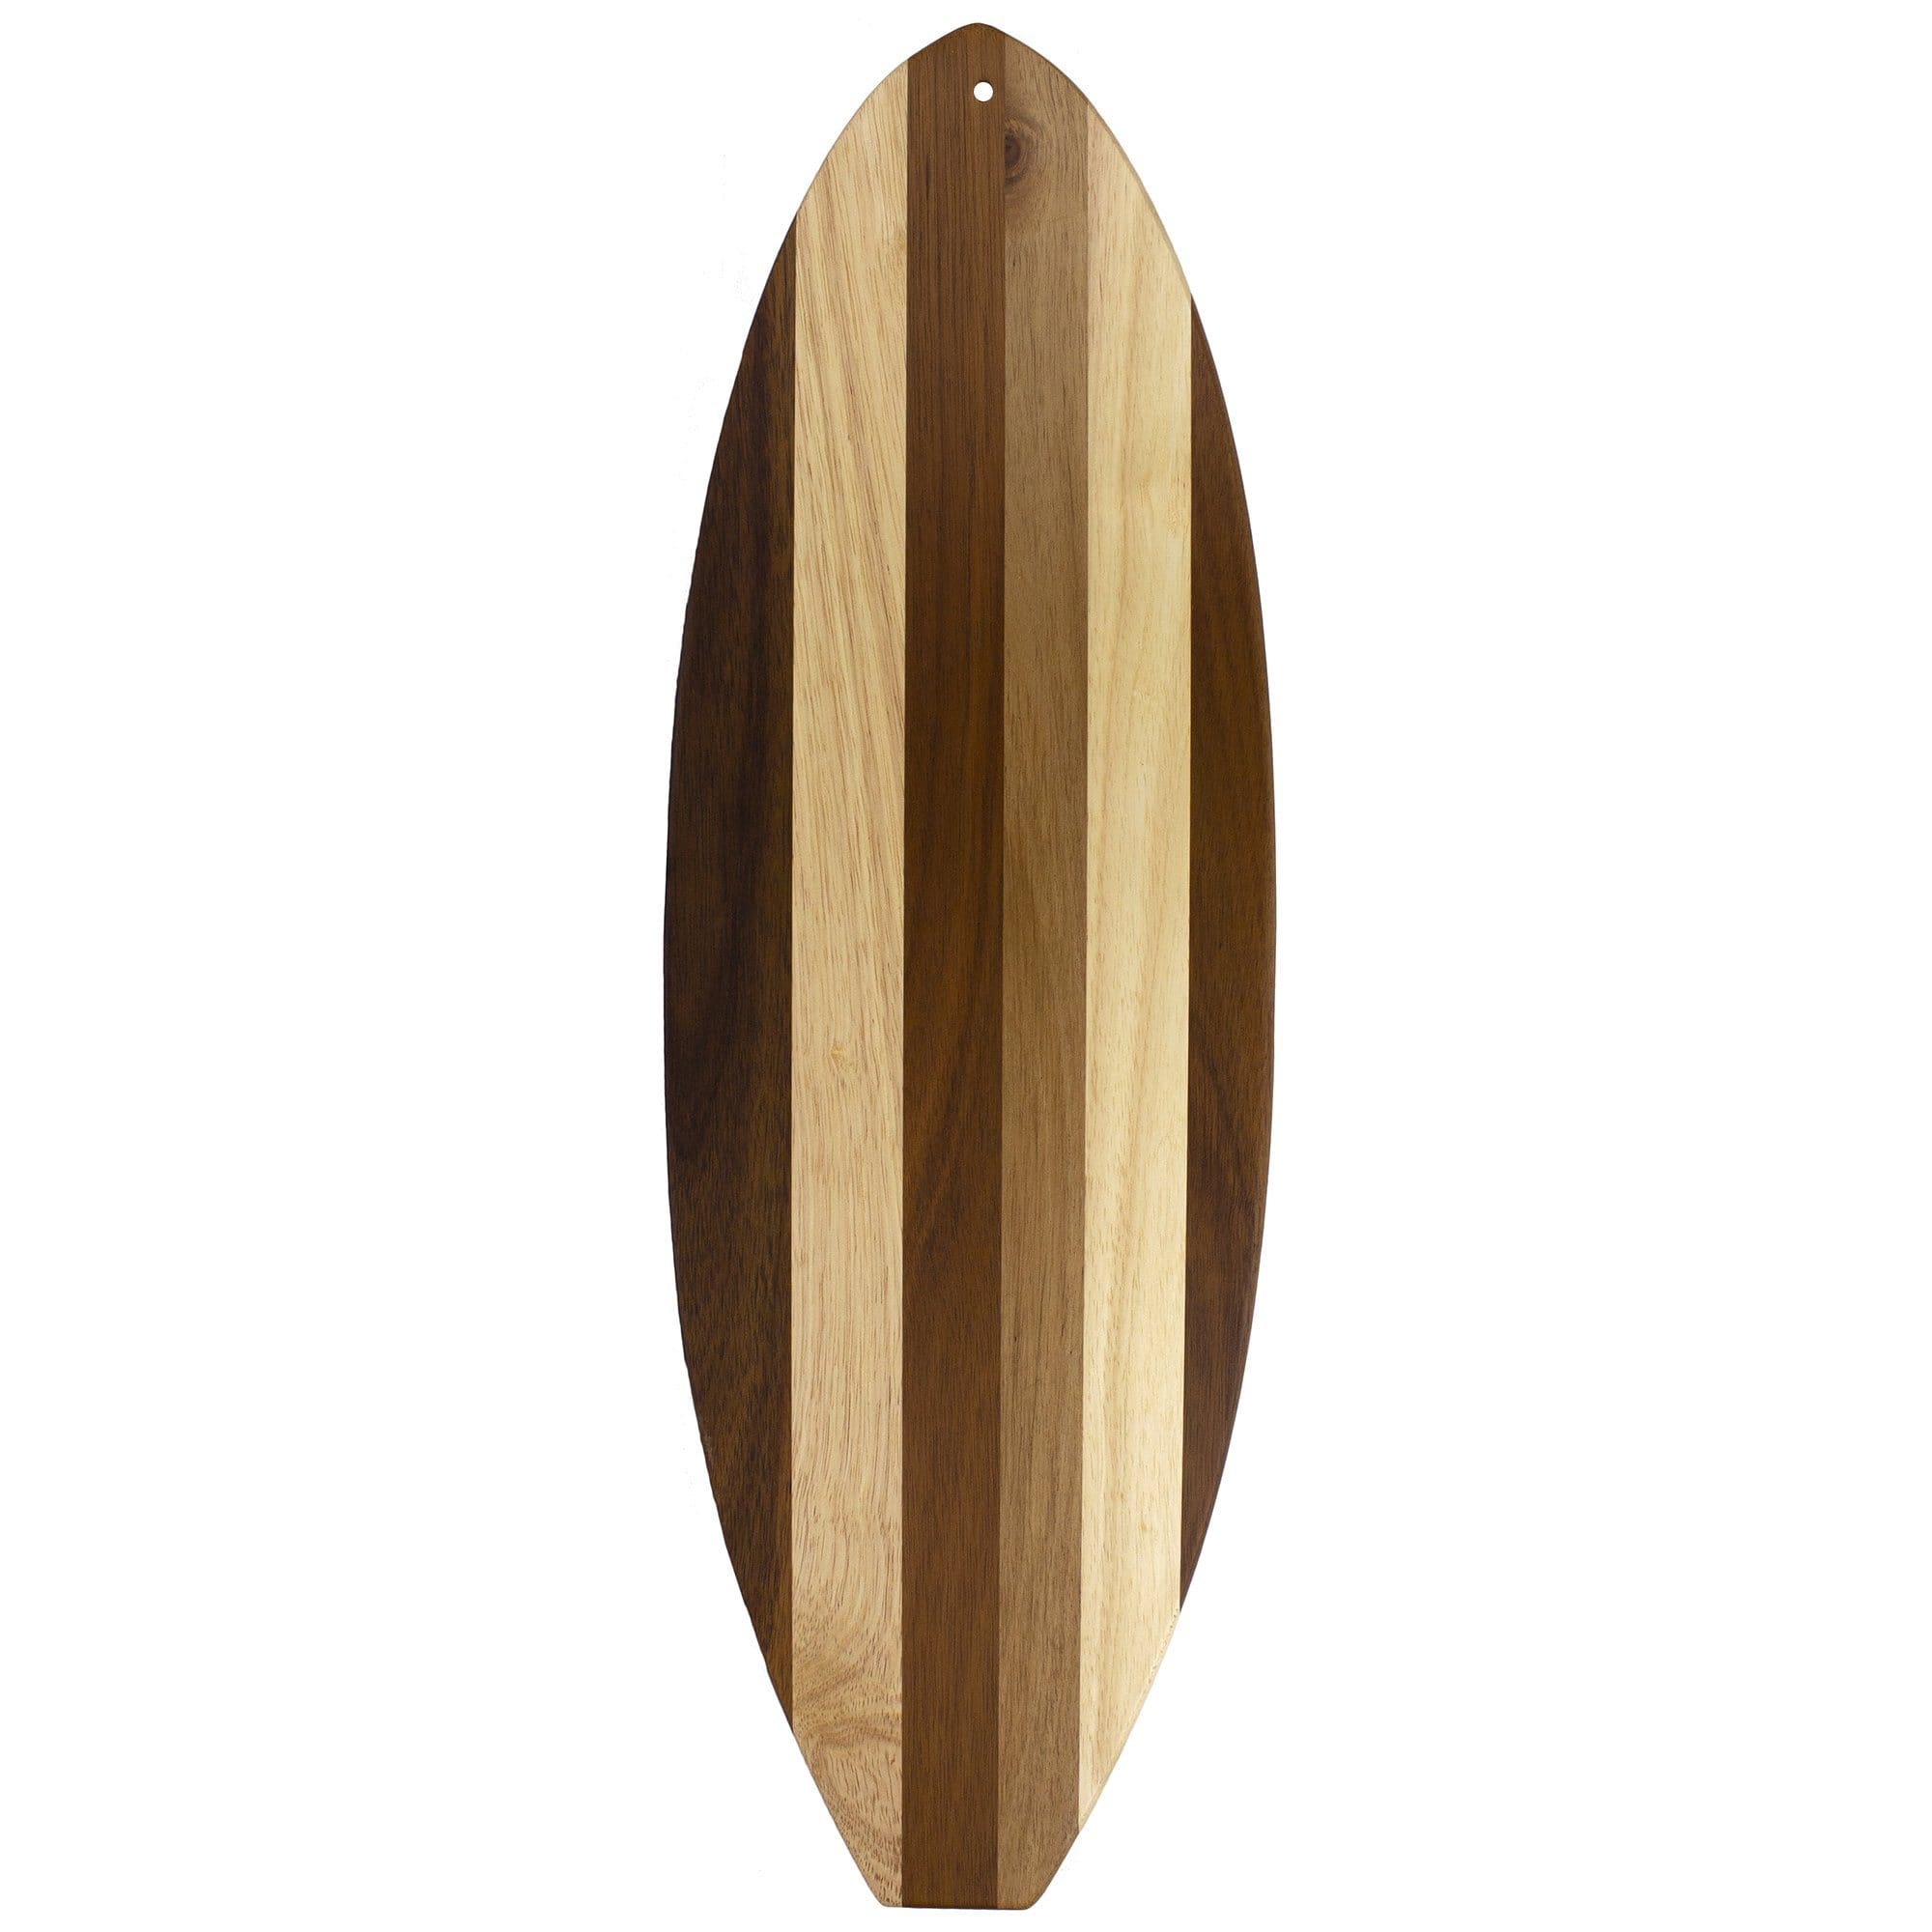 Ron Jon Lil Surfer Shiplap Cutting Board